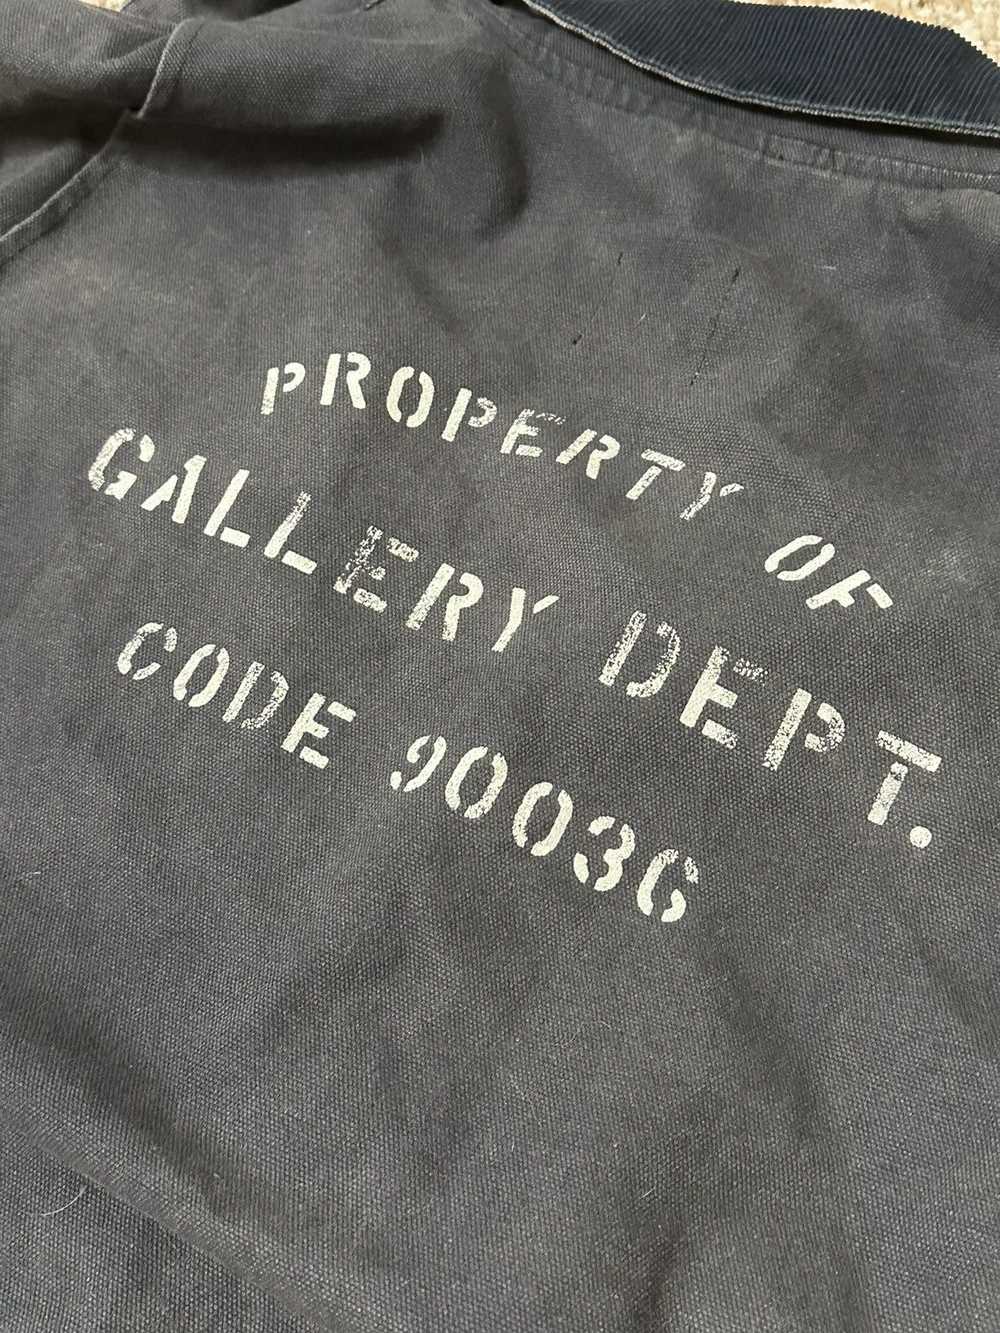 Gallery Dept. Gallery Dept Mechanic Jacket - image 10